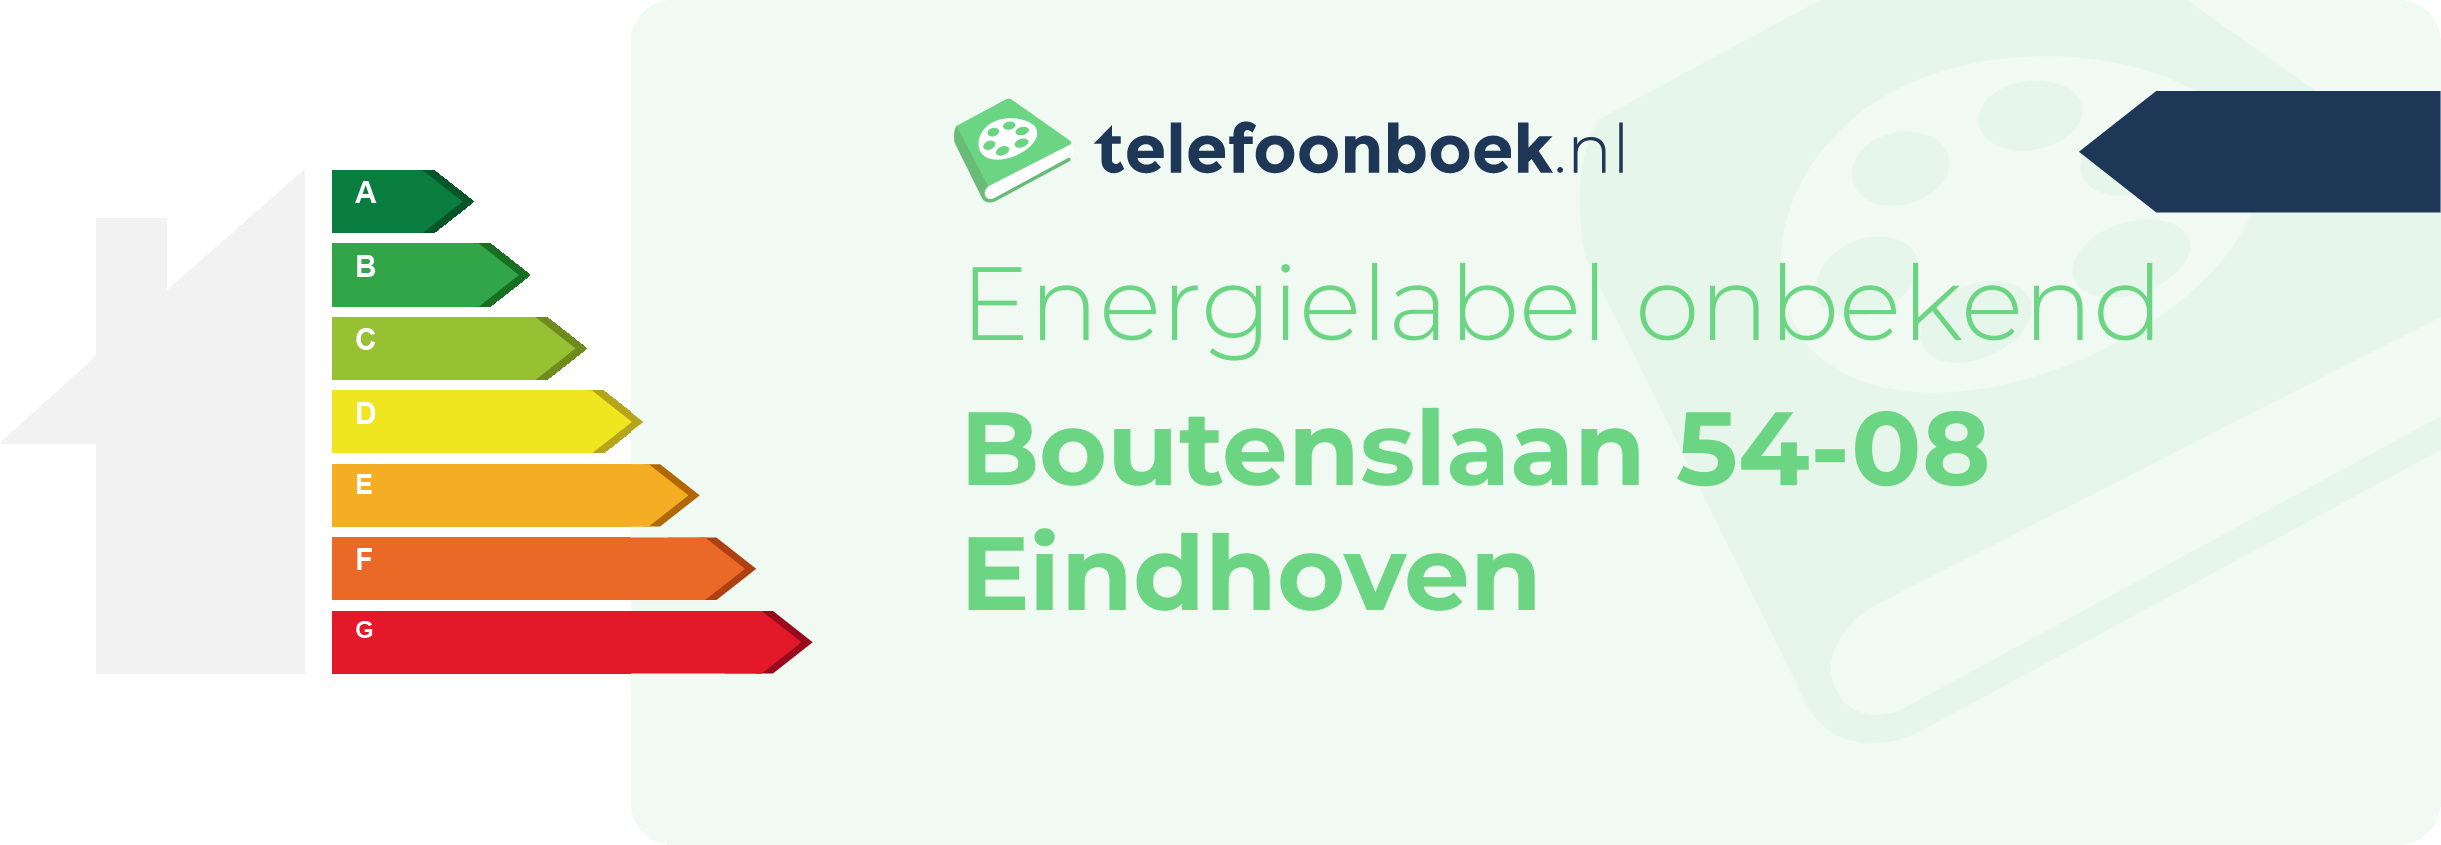 Energielabel Boutenslaan 54-08 Eindhoven